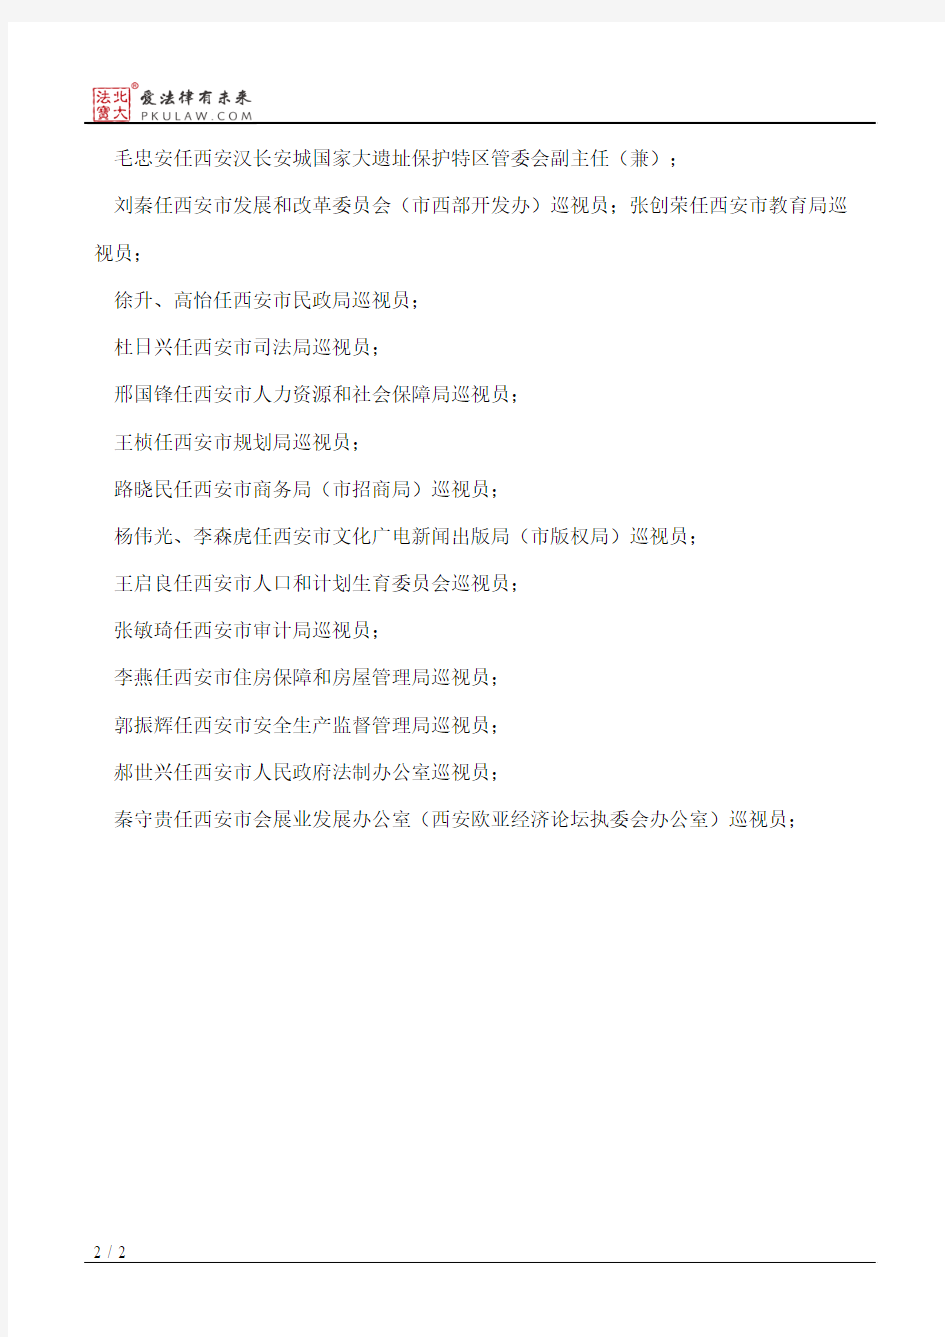 西安市人民政府关于吴智民等职务任免的通知